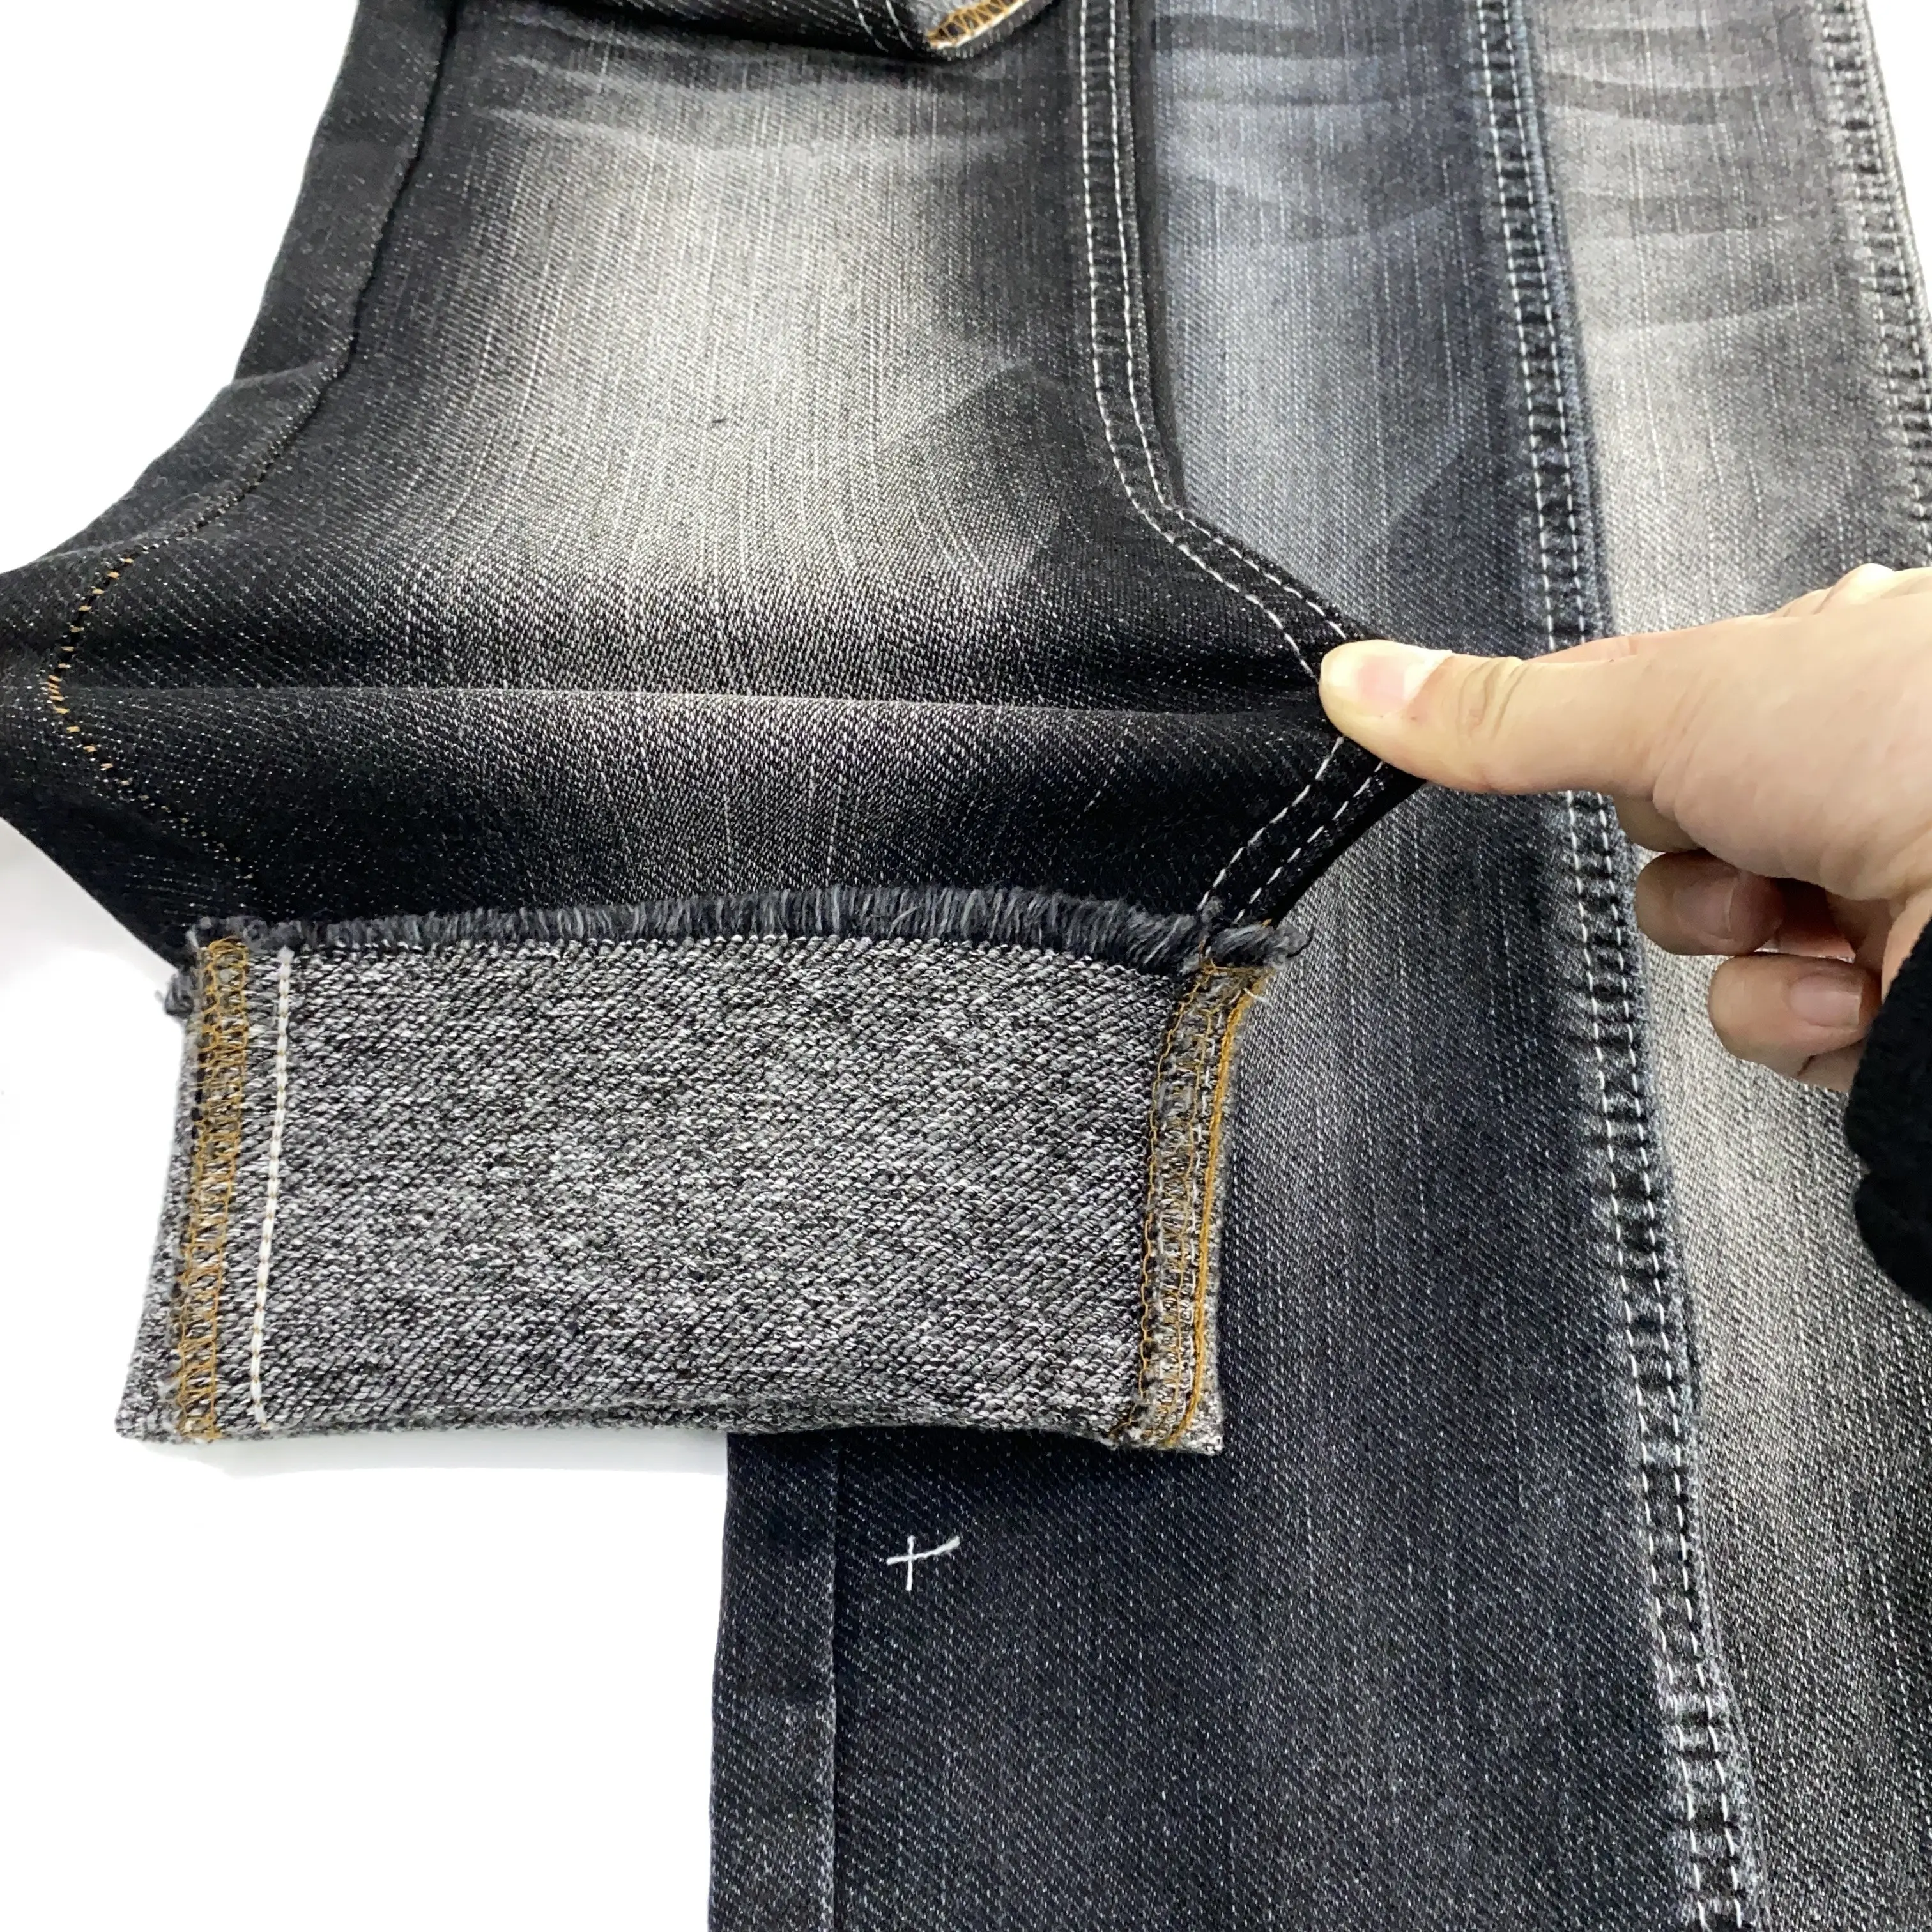 Big Stretch Men Boy Friend Denim Fabric For Jeans Denim Fabric Heavy Cotton Rolls Of Denim Fabric